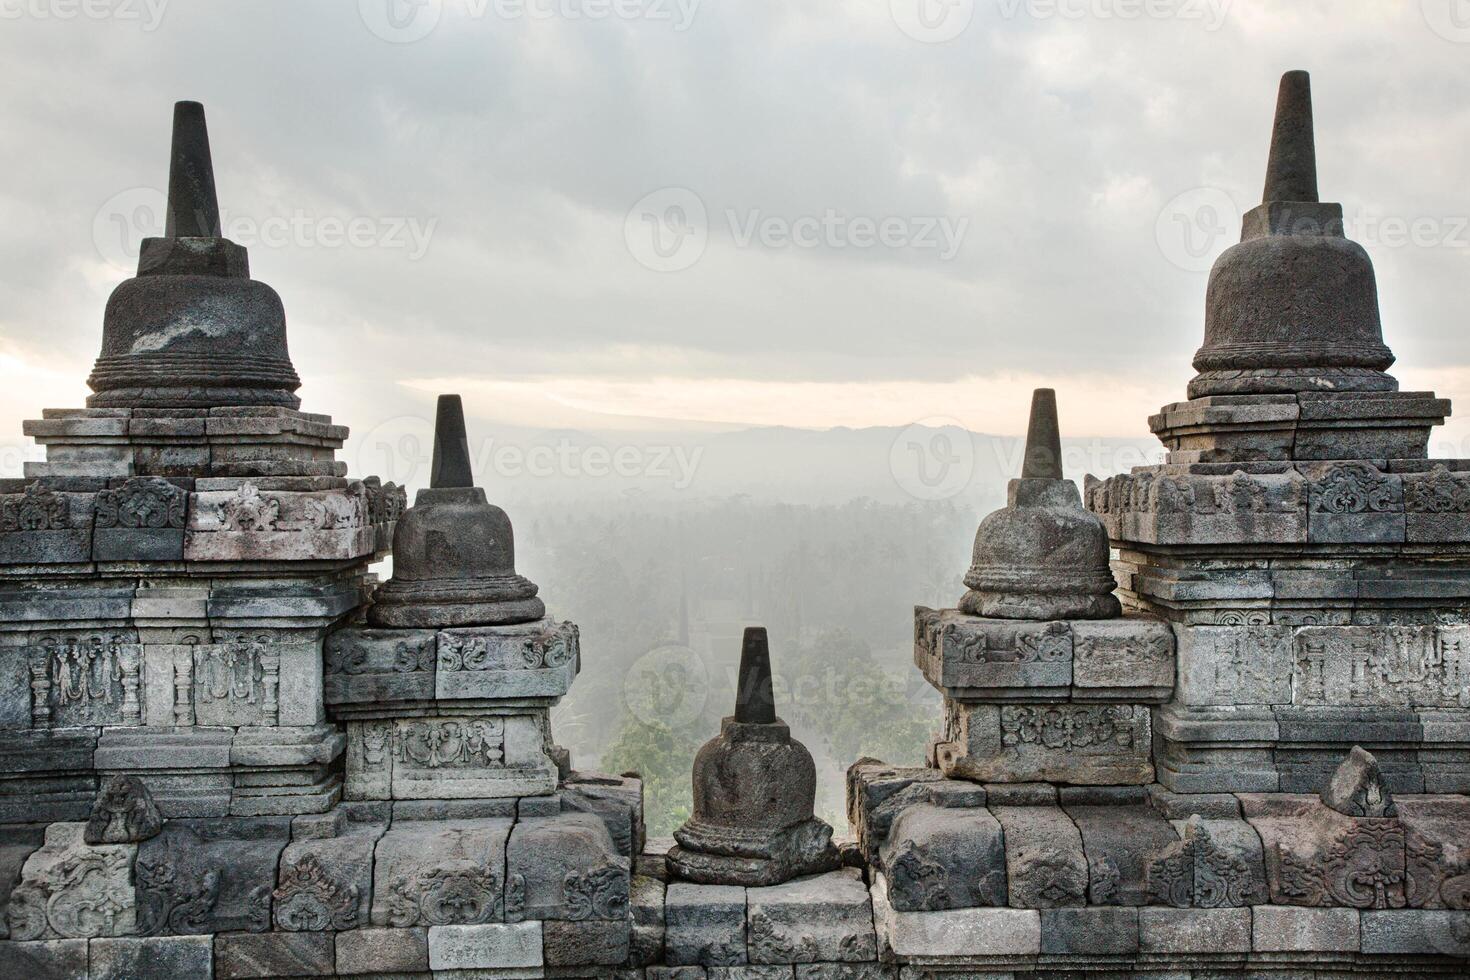 mooi borobudur tempel stoepa foto